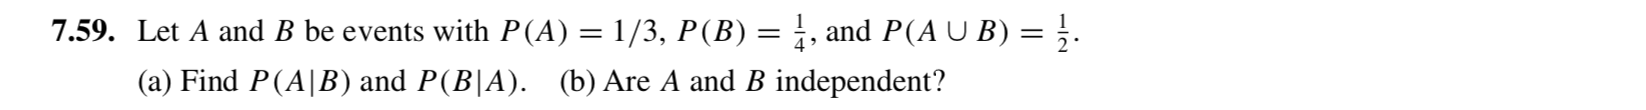 7.59. Let A and B be events with P(A) = 1/3, P(B) = ;, and P(A U B) = }.
(a) Find P(A|B) and P(B|A). (b) Are A and B independent?
